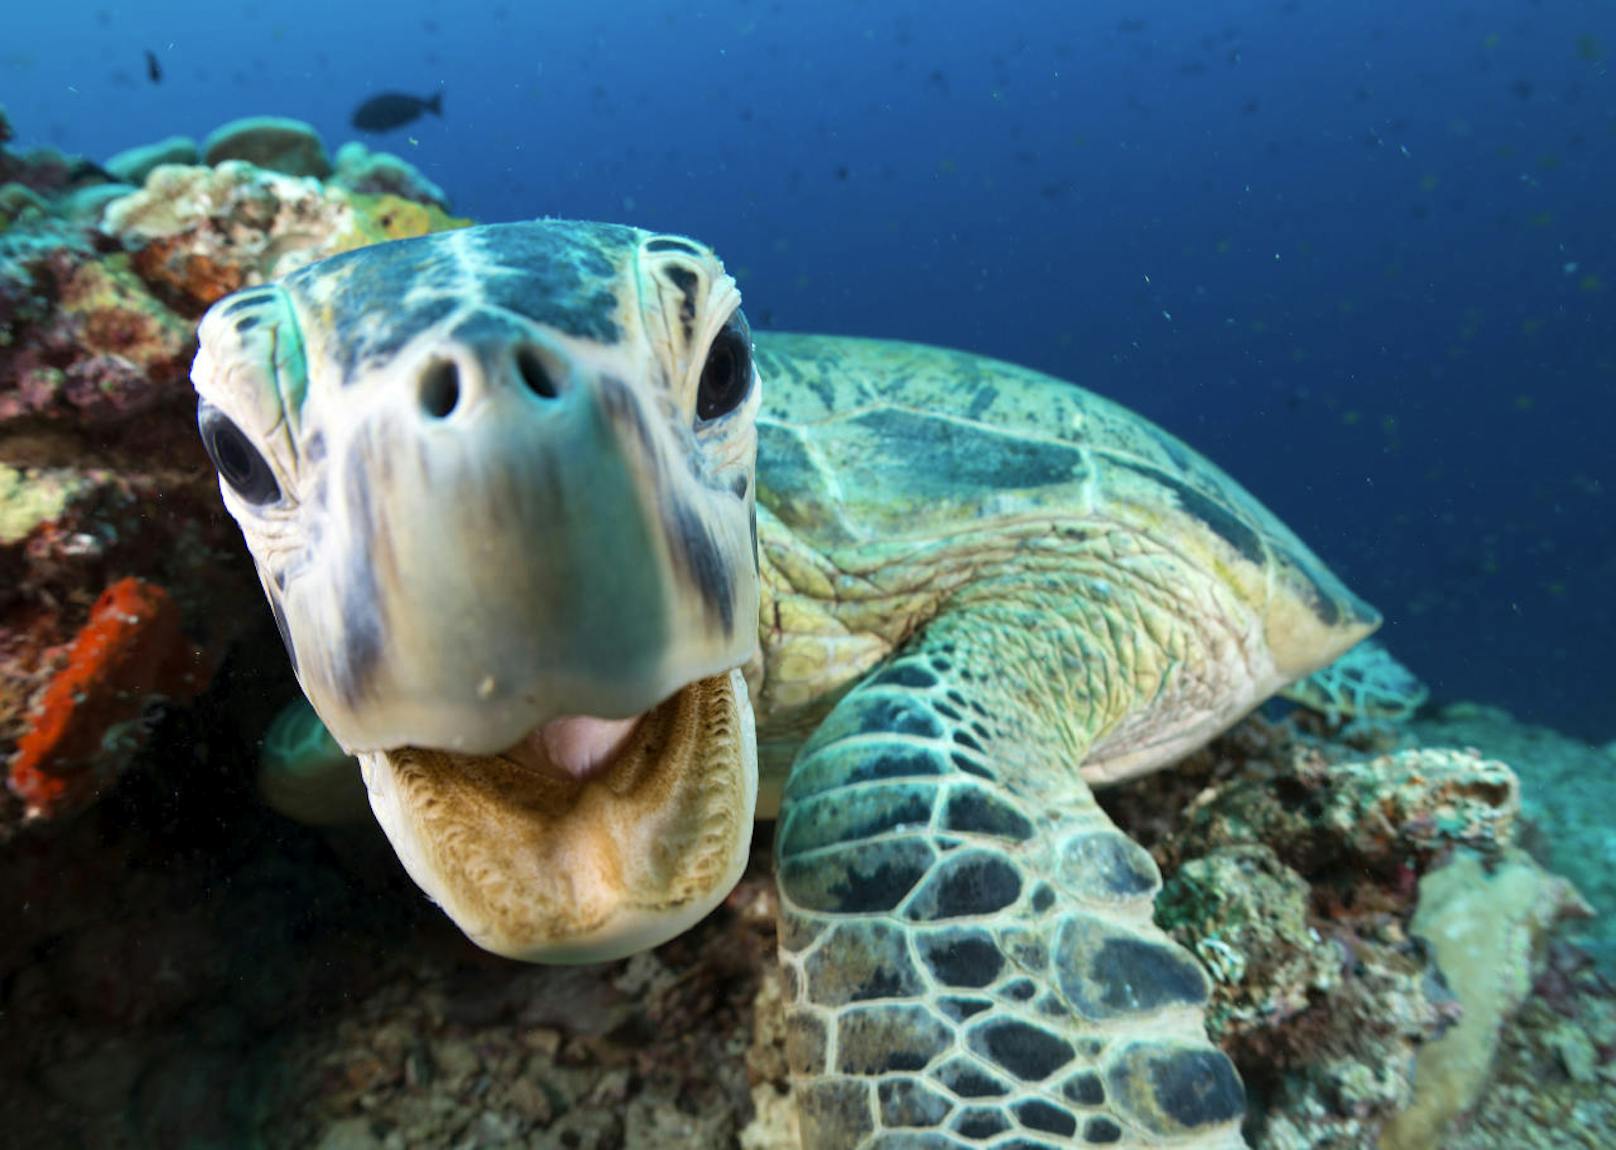 Auf 125 Tauch- und Drehreisen, die in über 39 Länder führten, wurden unter Wasser beeindruckende Tiergeschichten eingefangen. Unser Blick auf die Weltmeere wird nicht mehr derselbe sein. In Deutschland wird die Grüne Meeresschildkröte auch Suppenschildkröte genannt, weil sie lange Zeit zur Herstellung von Schildkrötensuppe diente.